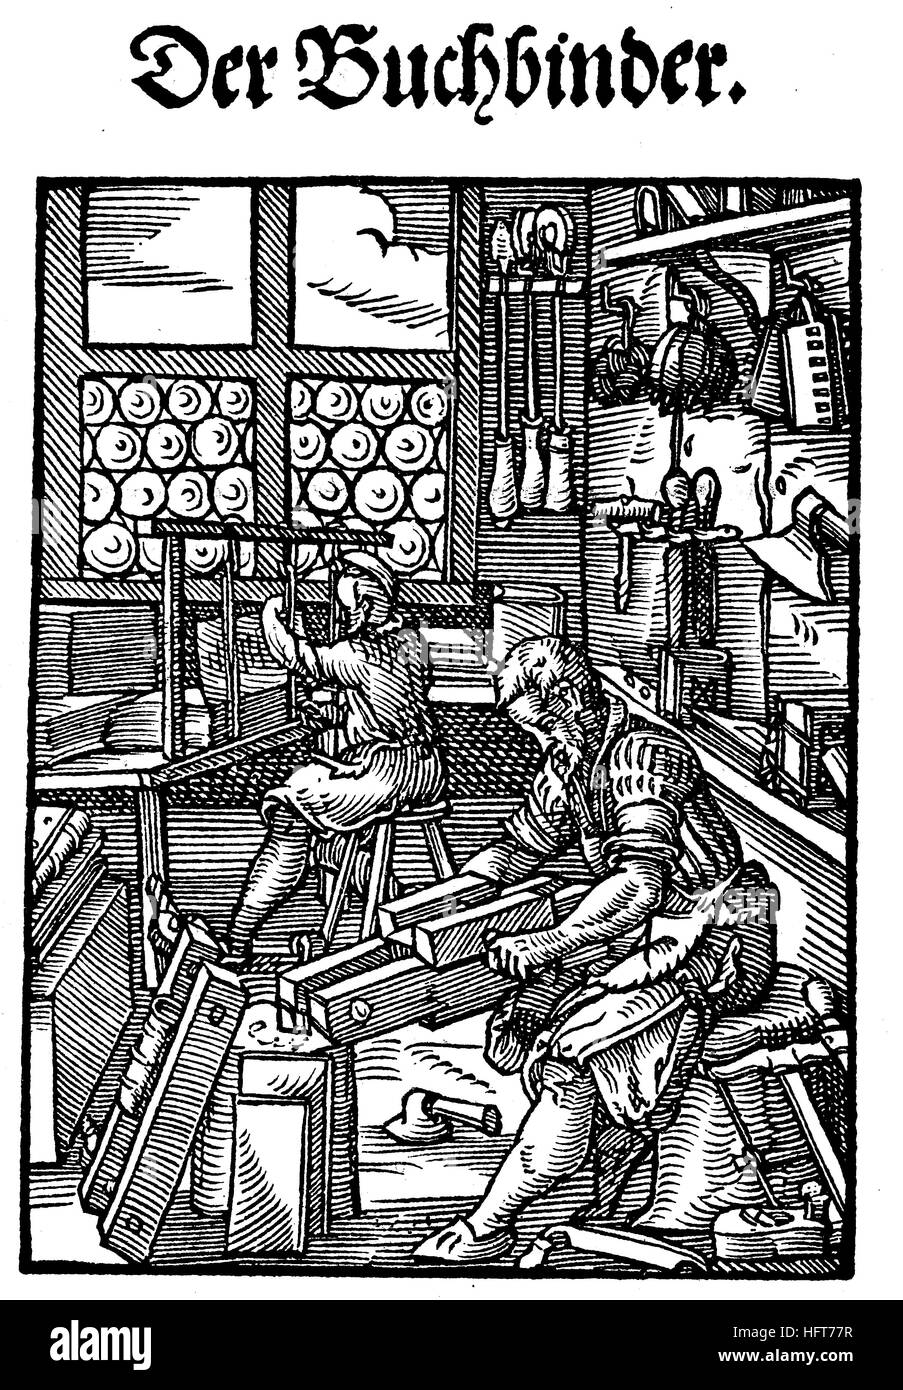 Le classeur, Der Buchbinder, Woodcut de la, Das Staendebuch, une célèbre série de coupes de bois des métiers d'Amman, 1568, Allemagne, artisanat, travail, artisan, coupe de bois de l'année 1885, numérique amélioré Banque D'Images